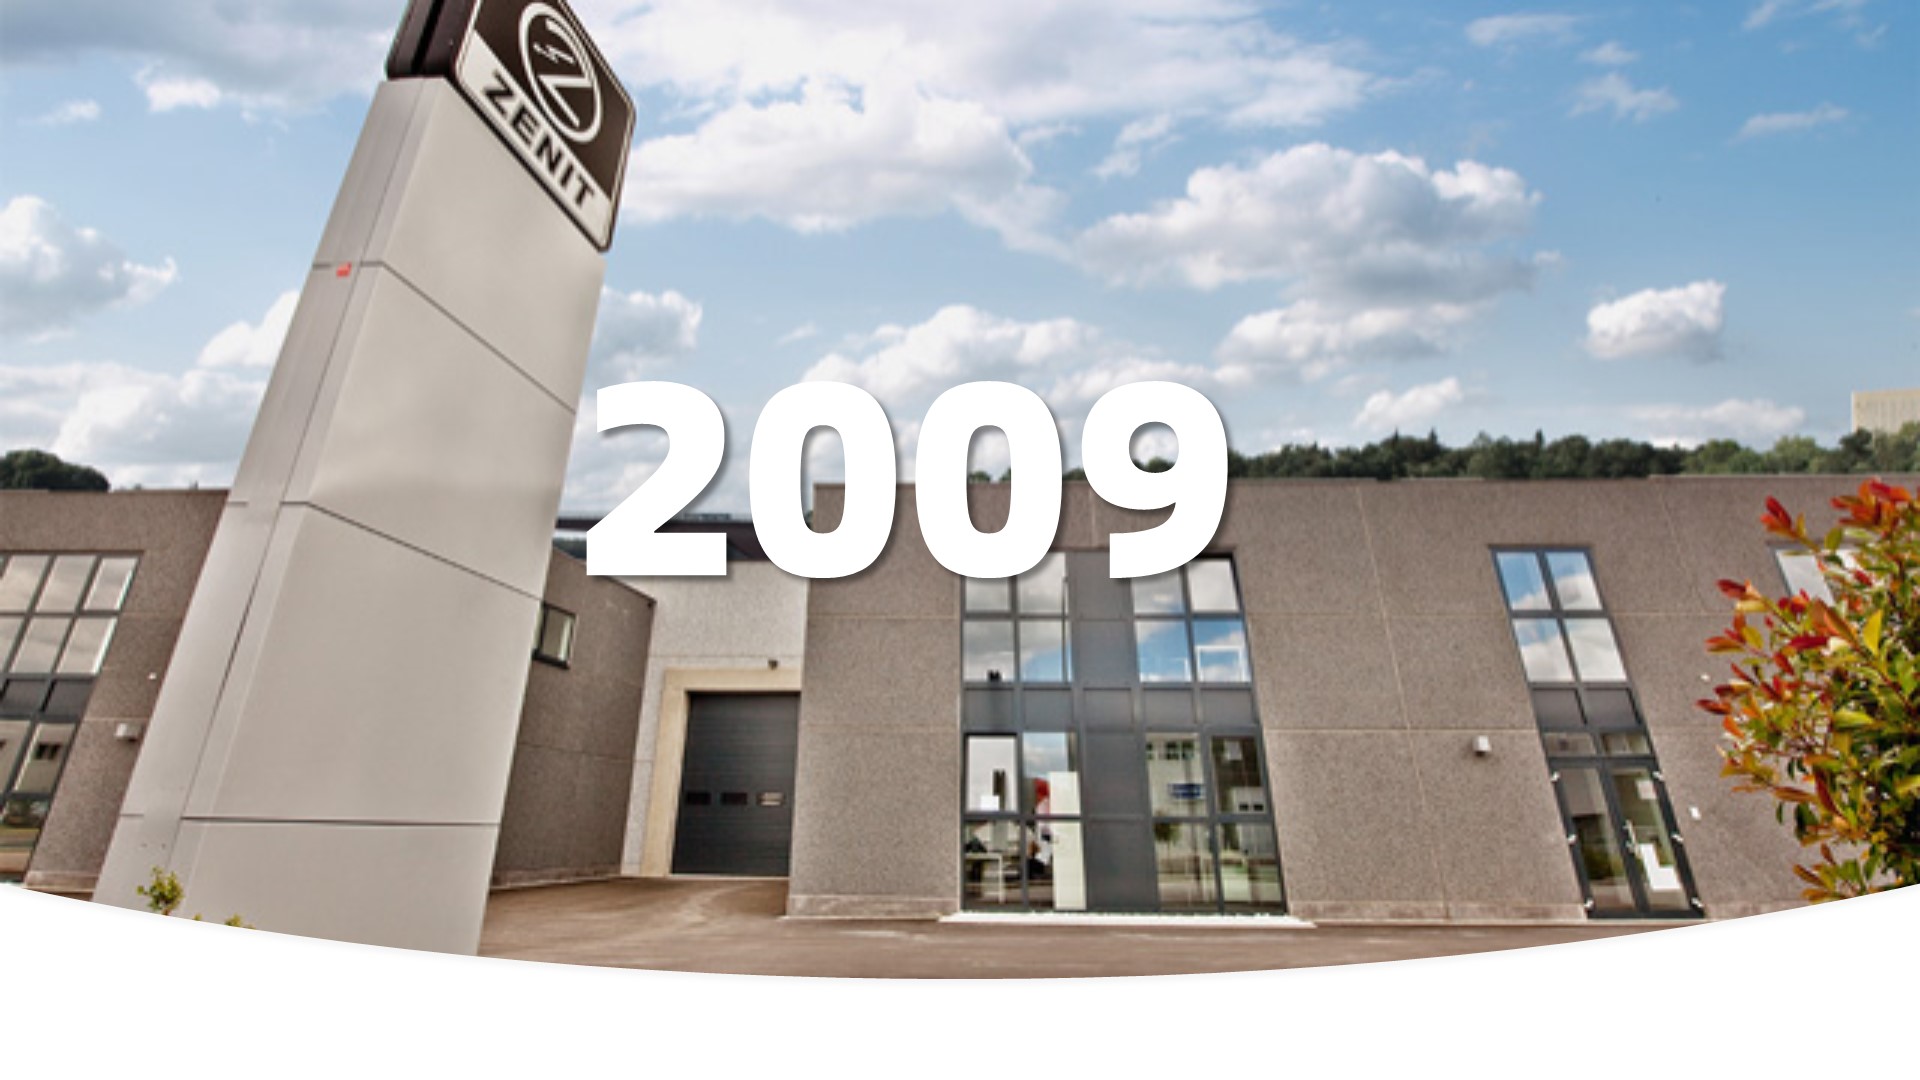 位于卢森堡的EMEA（欧洲、中东和非洲）子公司开始营业： Regional Office in Luxembourg starts operations：总占地面积5,000平方米，目前覆盖面积3,000平方米。